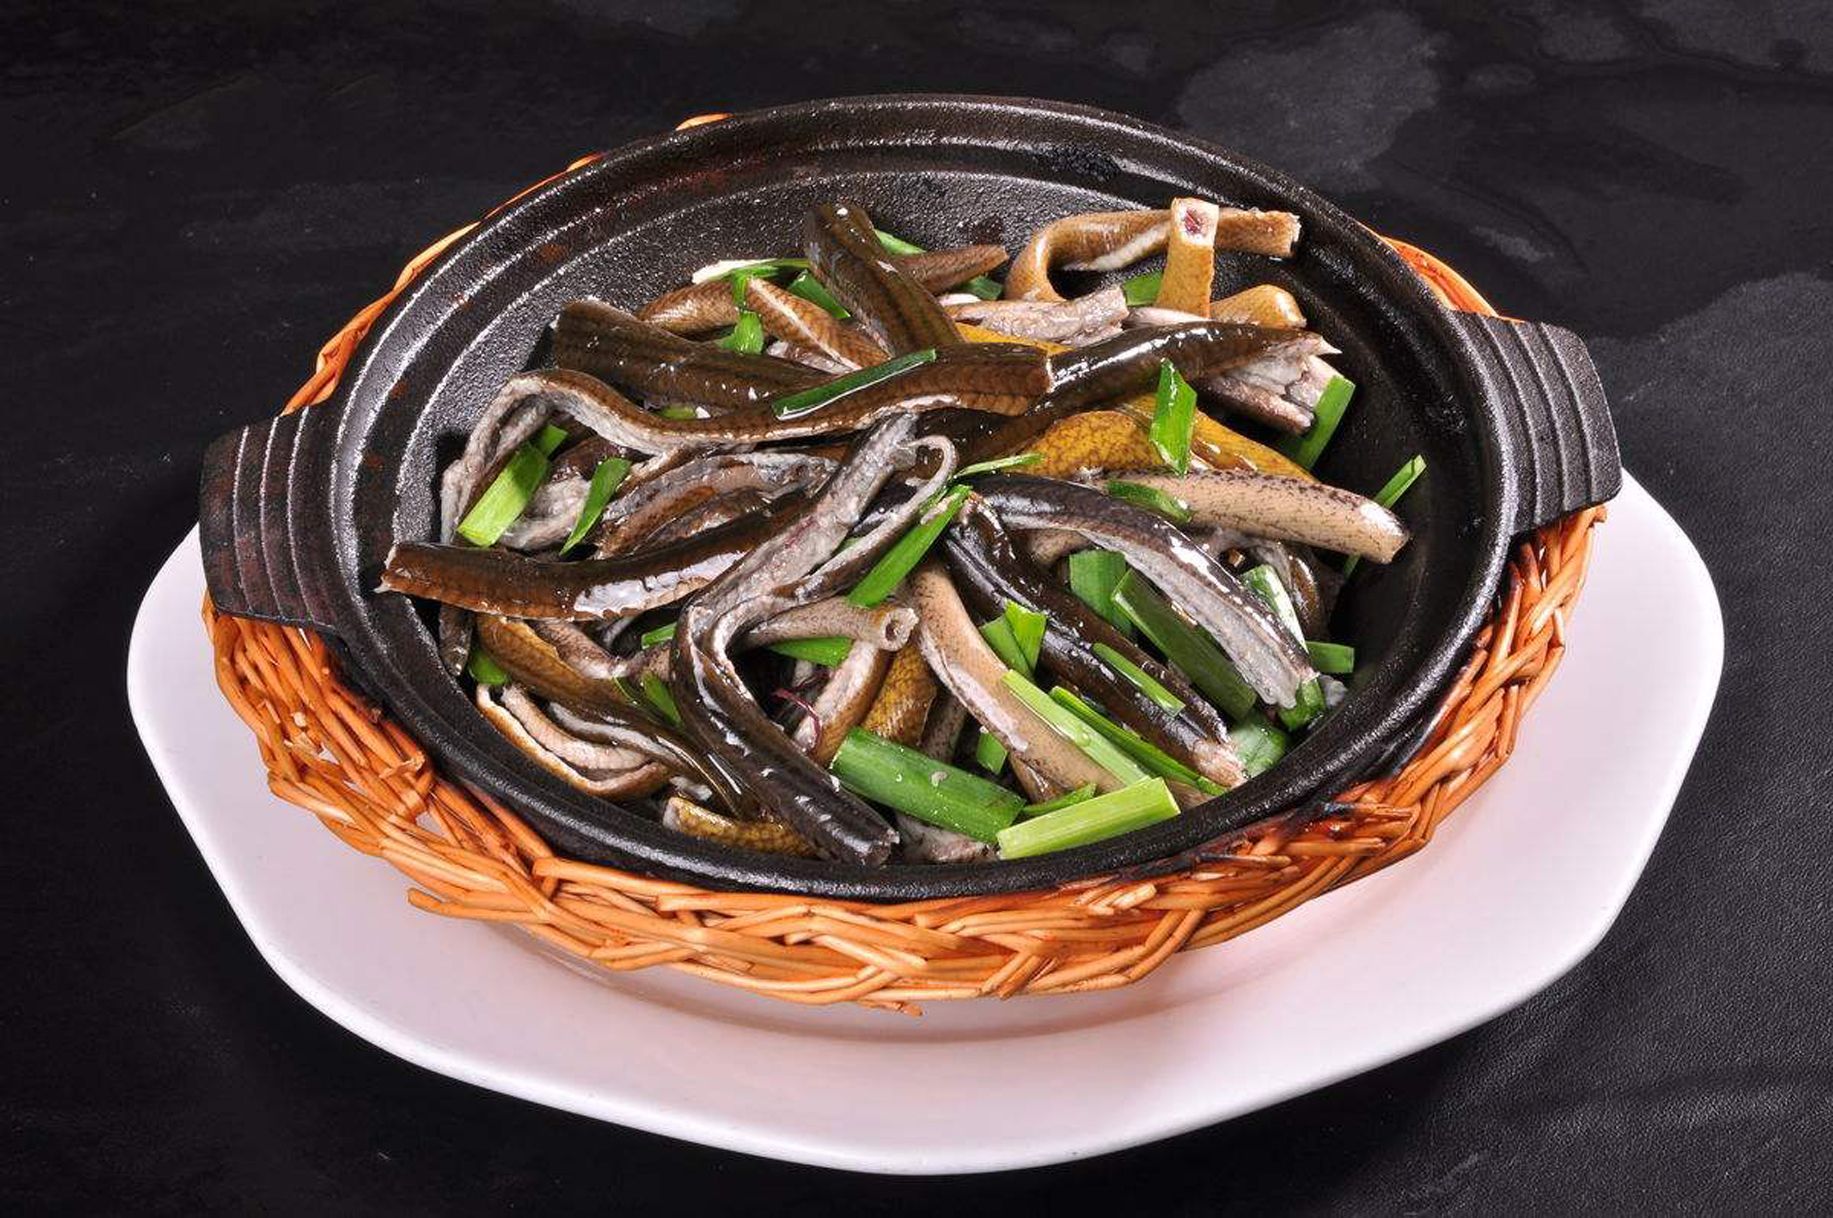 软兜长鱼是淮安人宴请中外贵客时不可或缺的一道菜,贵客们品尝后连连